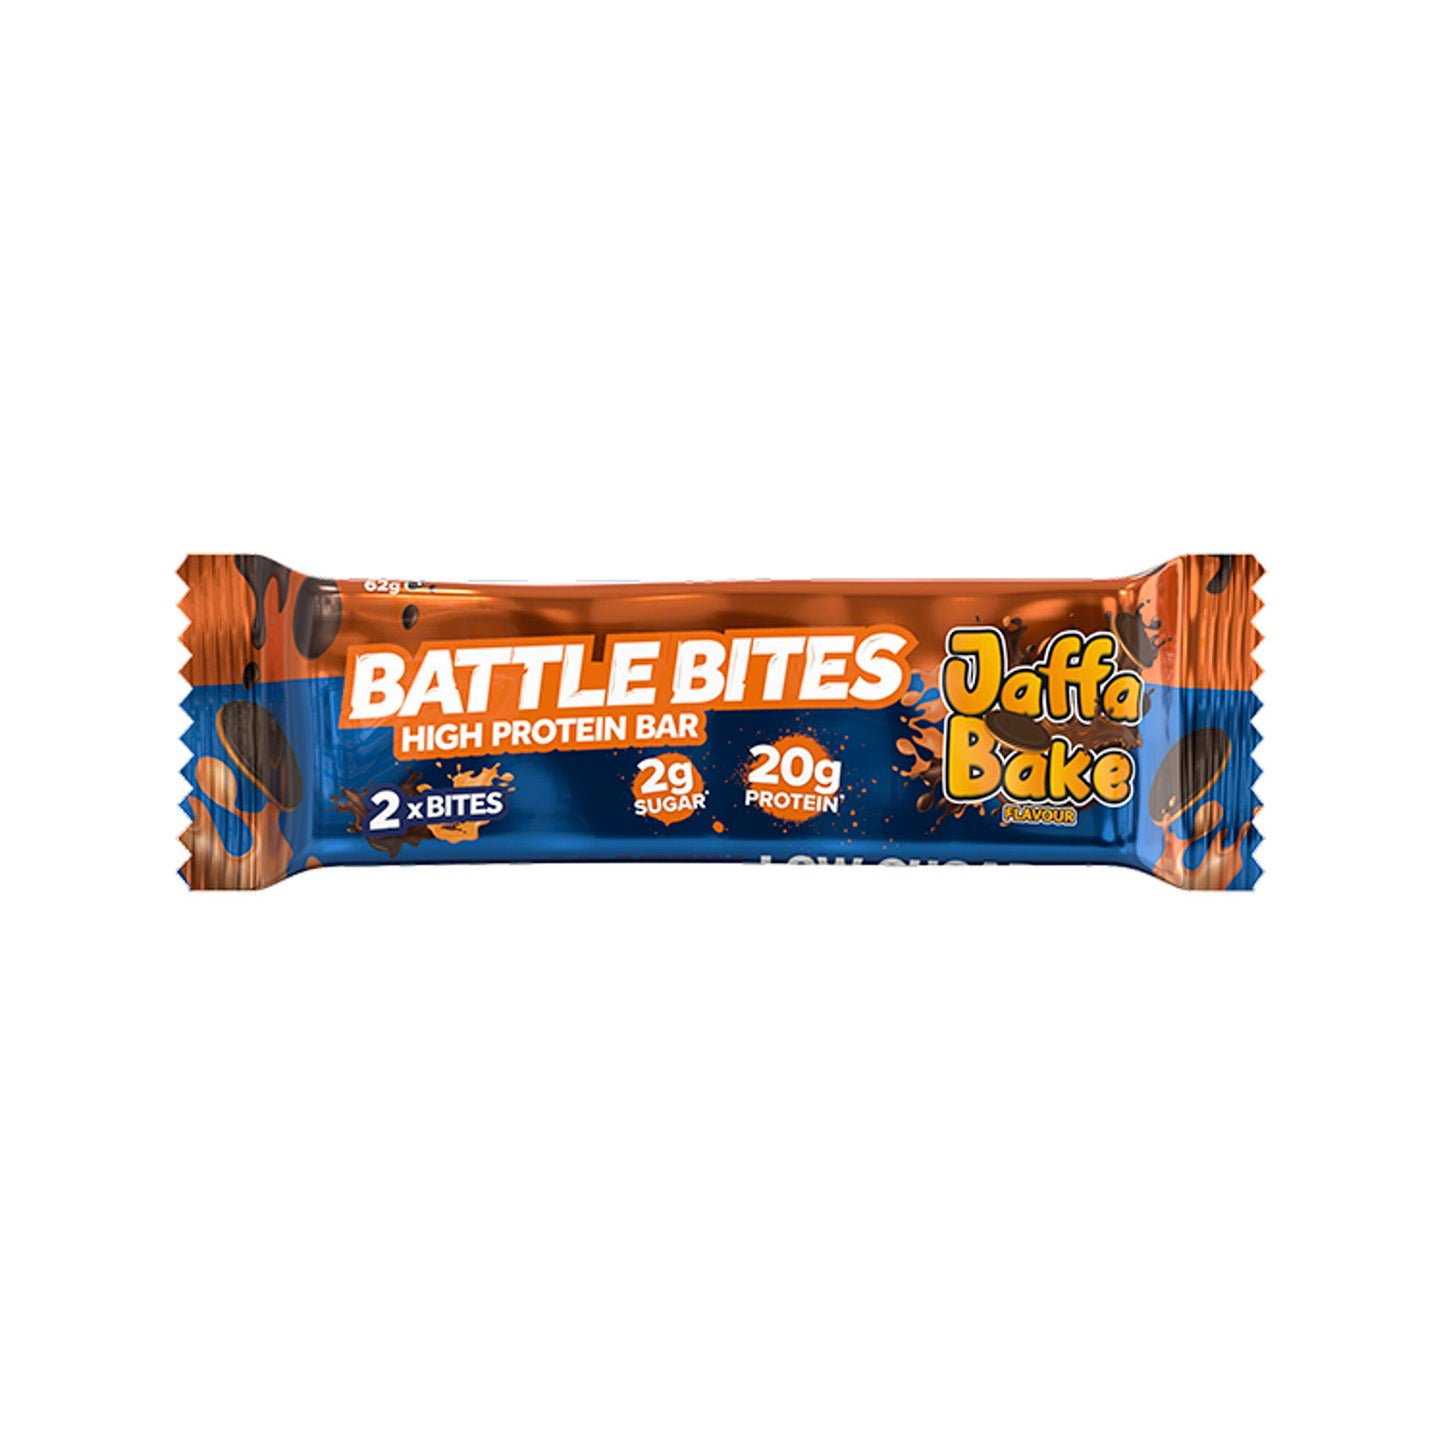 Battle Bites High Protein Bar Jaffa Bake